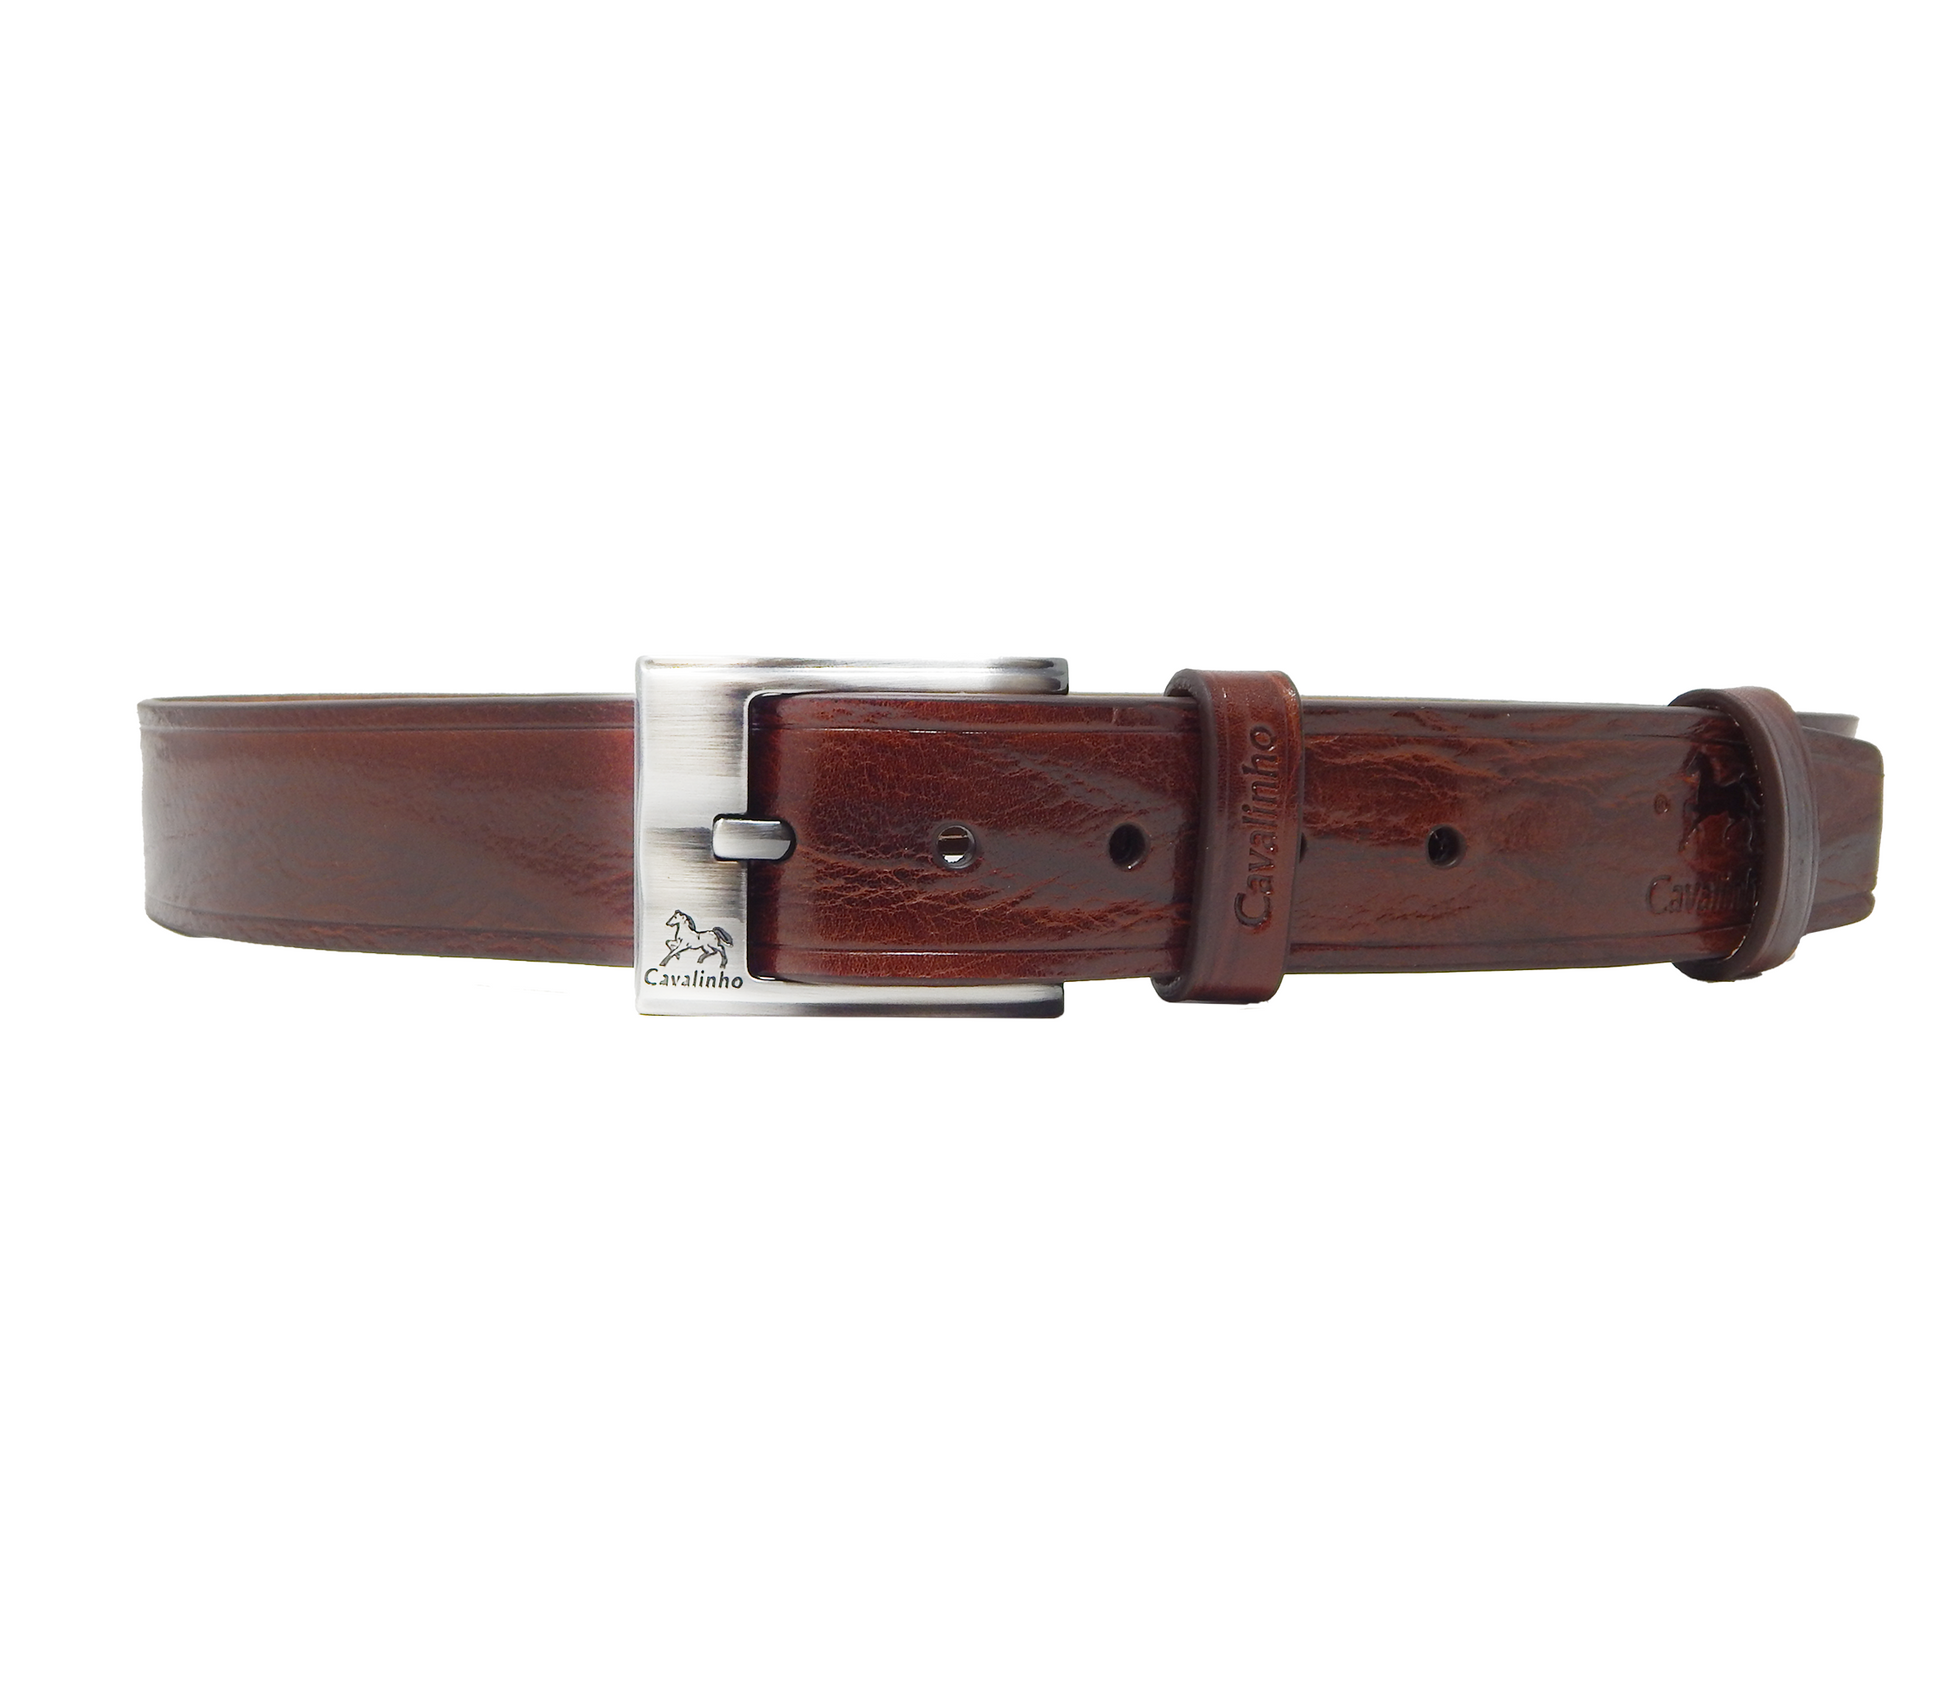 Cavalinho Formal Leather Belt - Brown Silver - 58020456.02